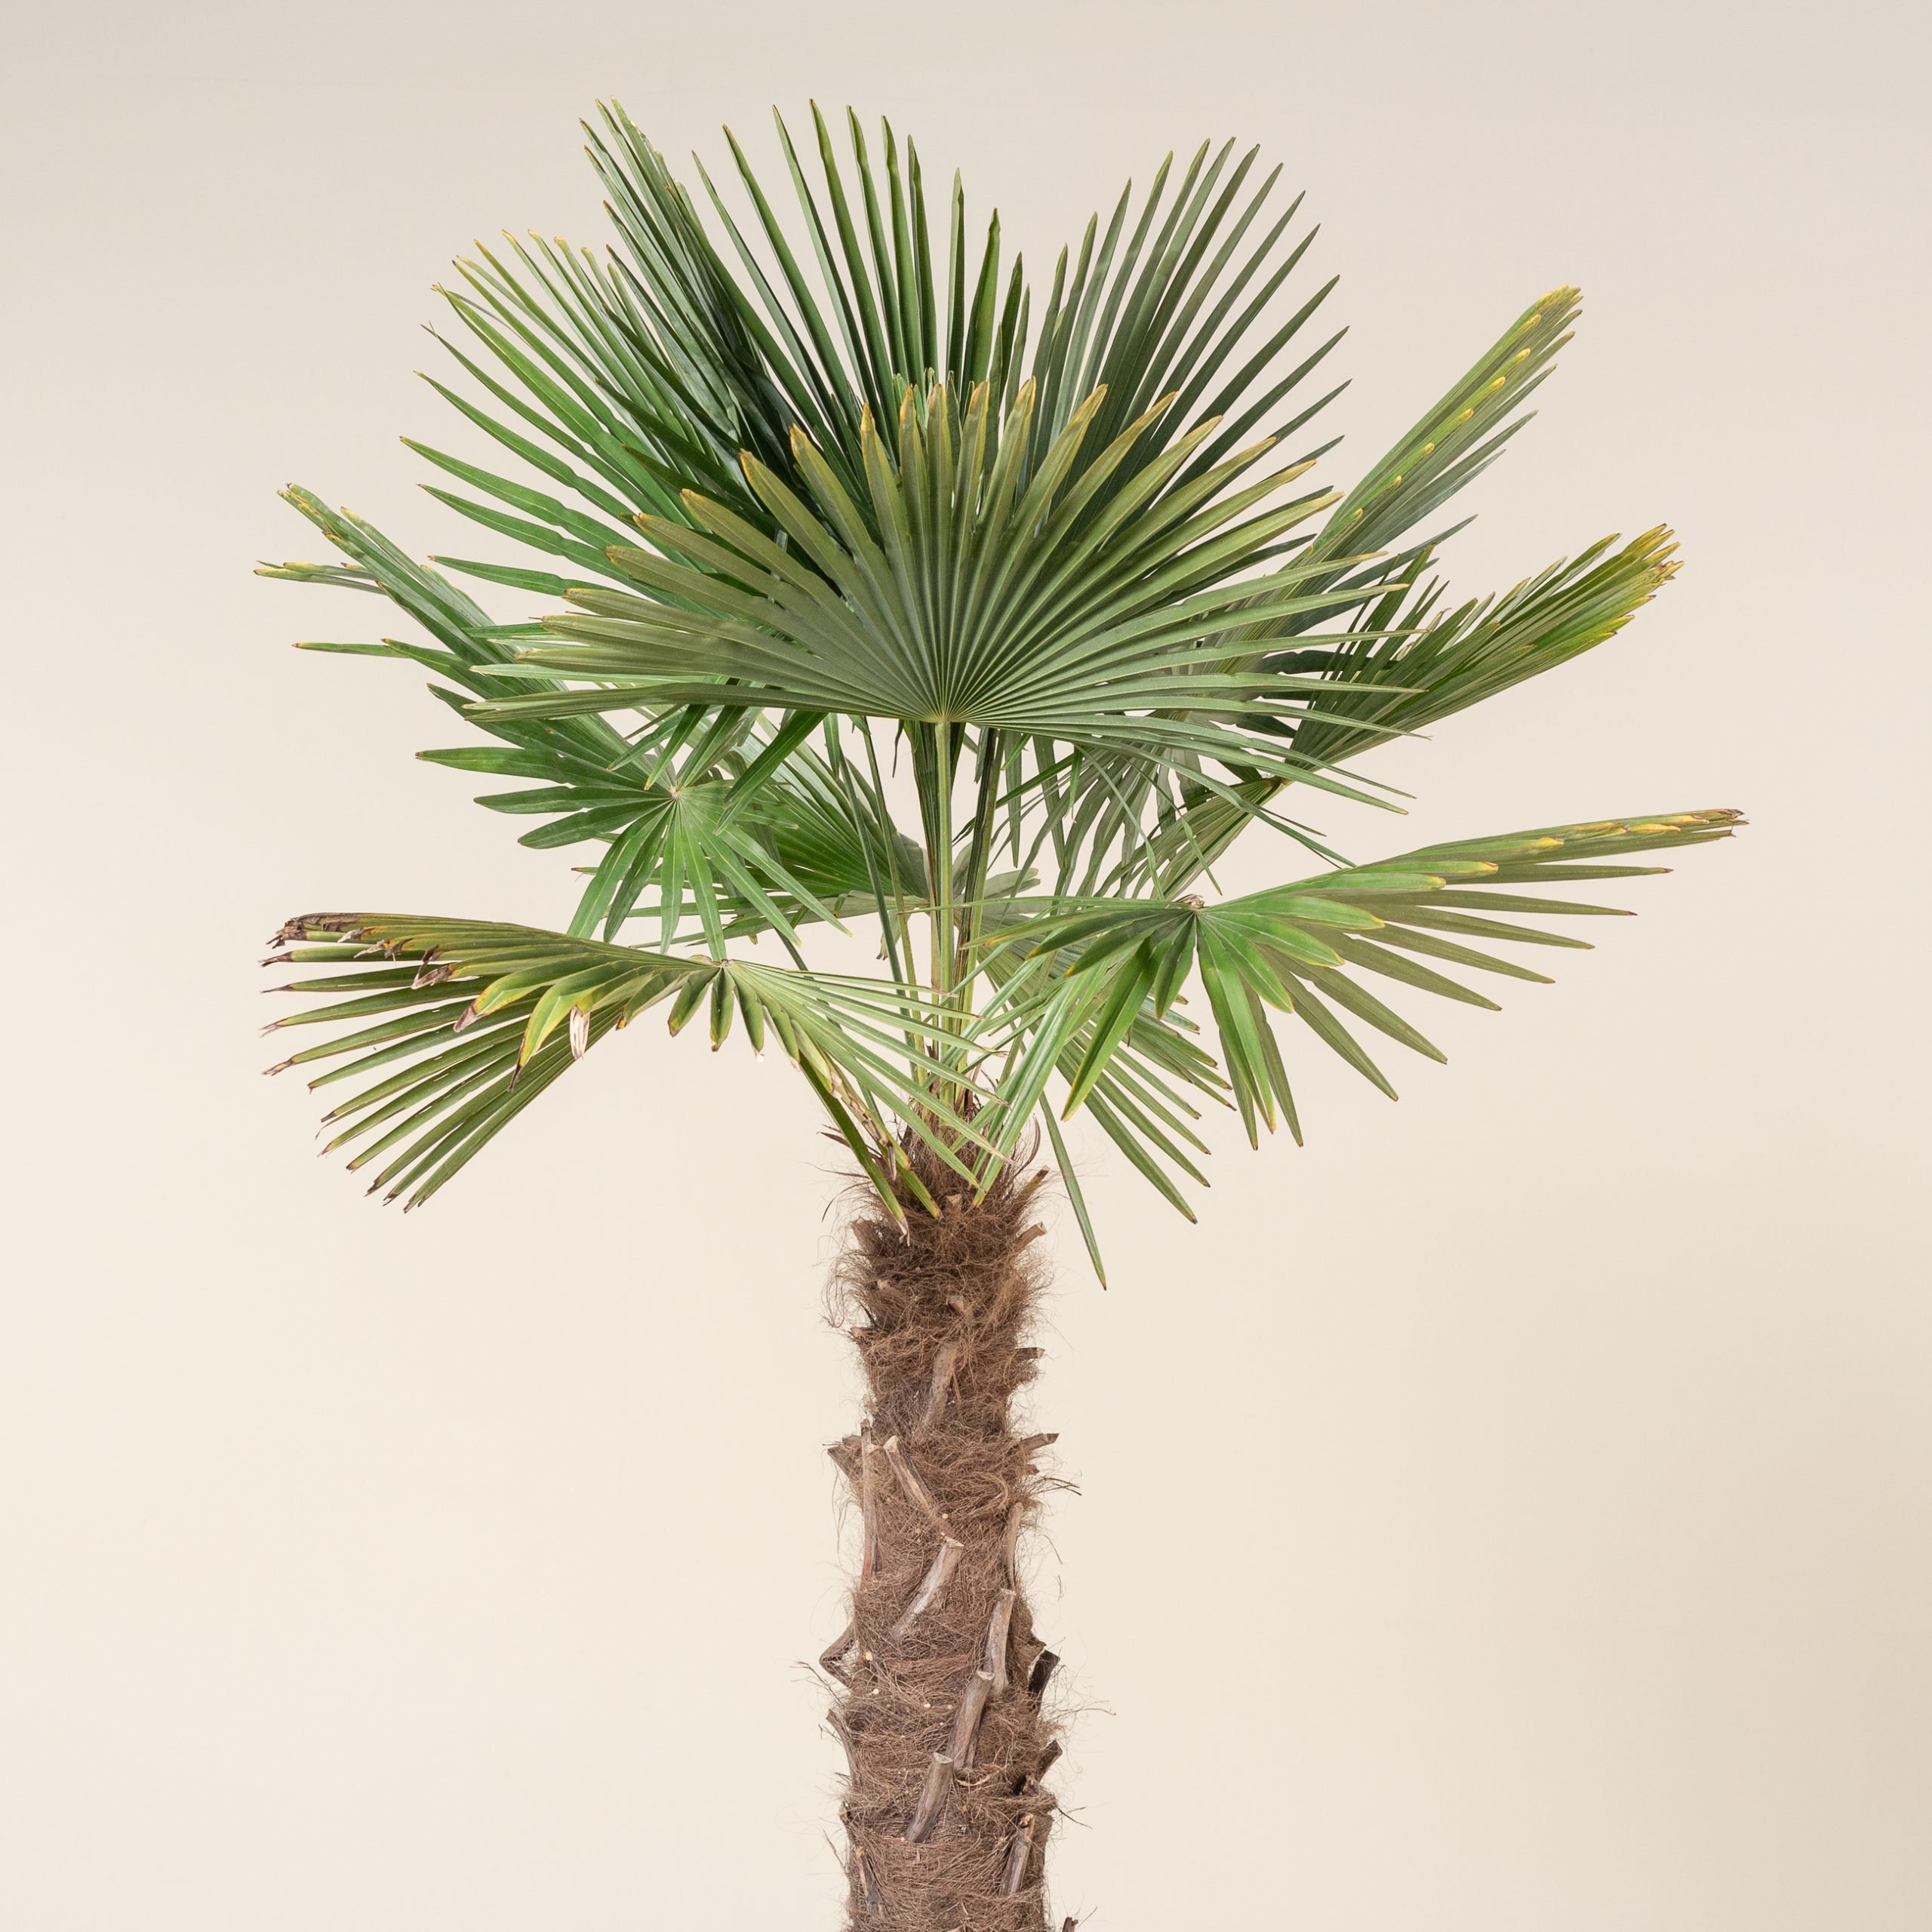 The Palm tree - El Palmeral de Orihuela